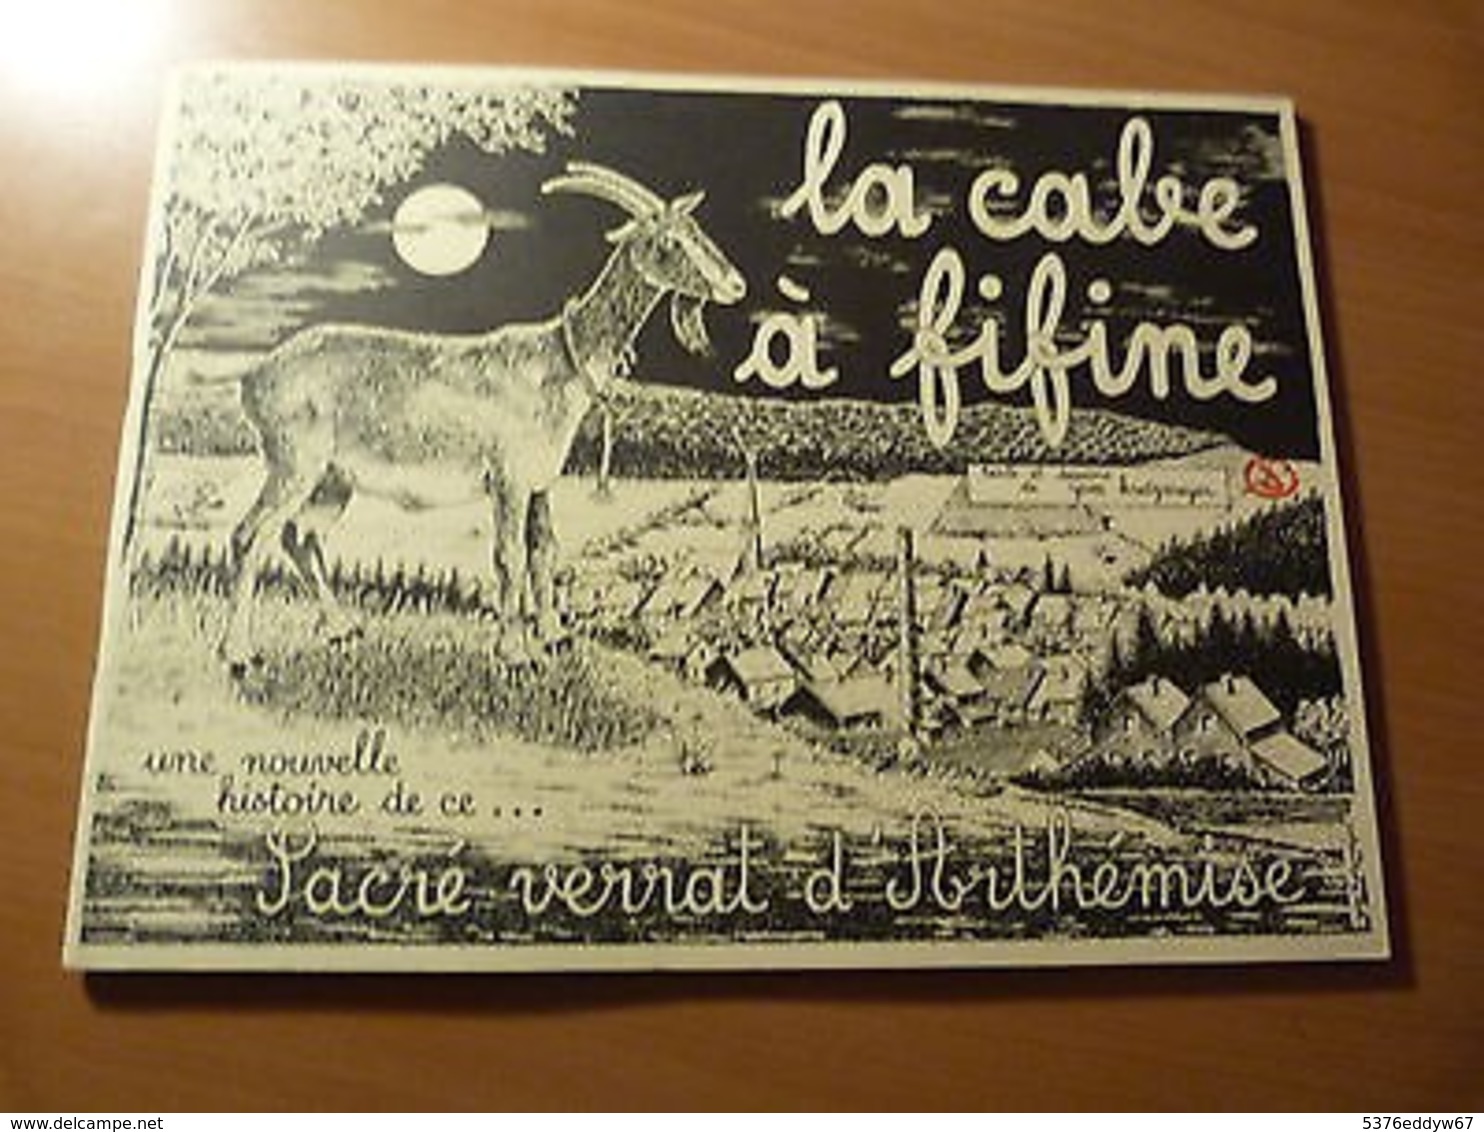 La Cabe à Fifine-Une Nelle Histoire De Ce Sacré Verrat D'Arthémise-Ardennes-1985 - 1901-1940